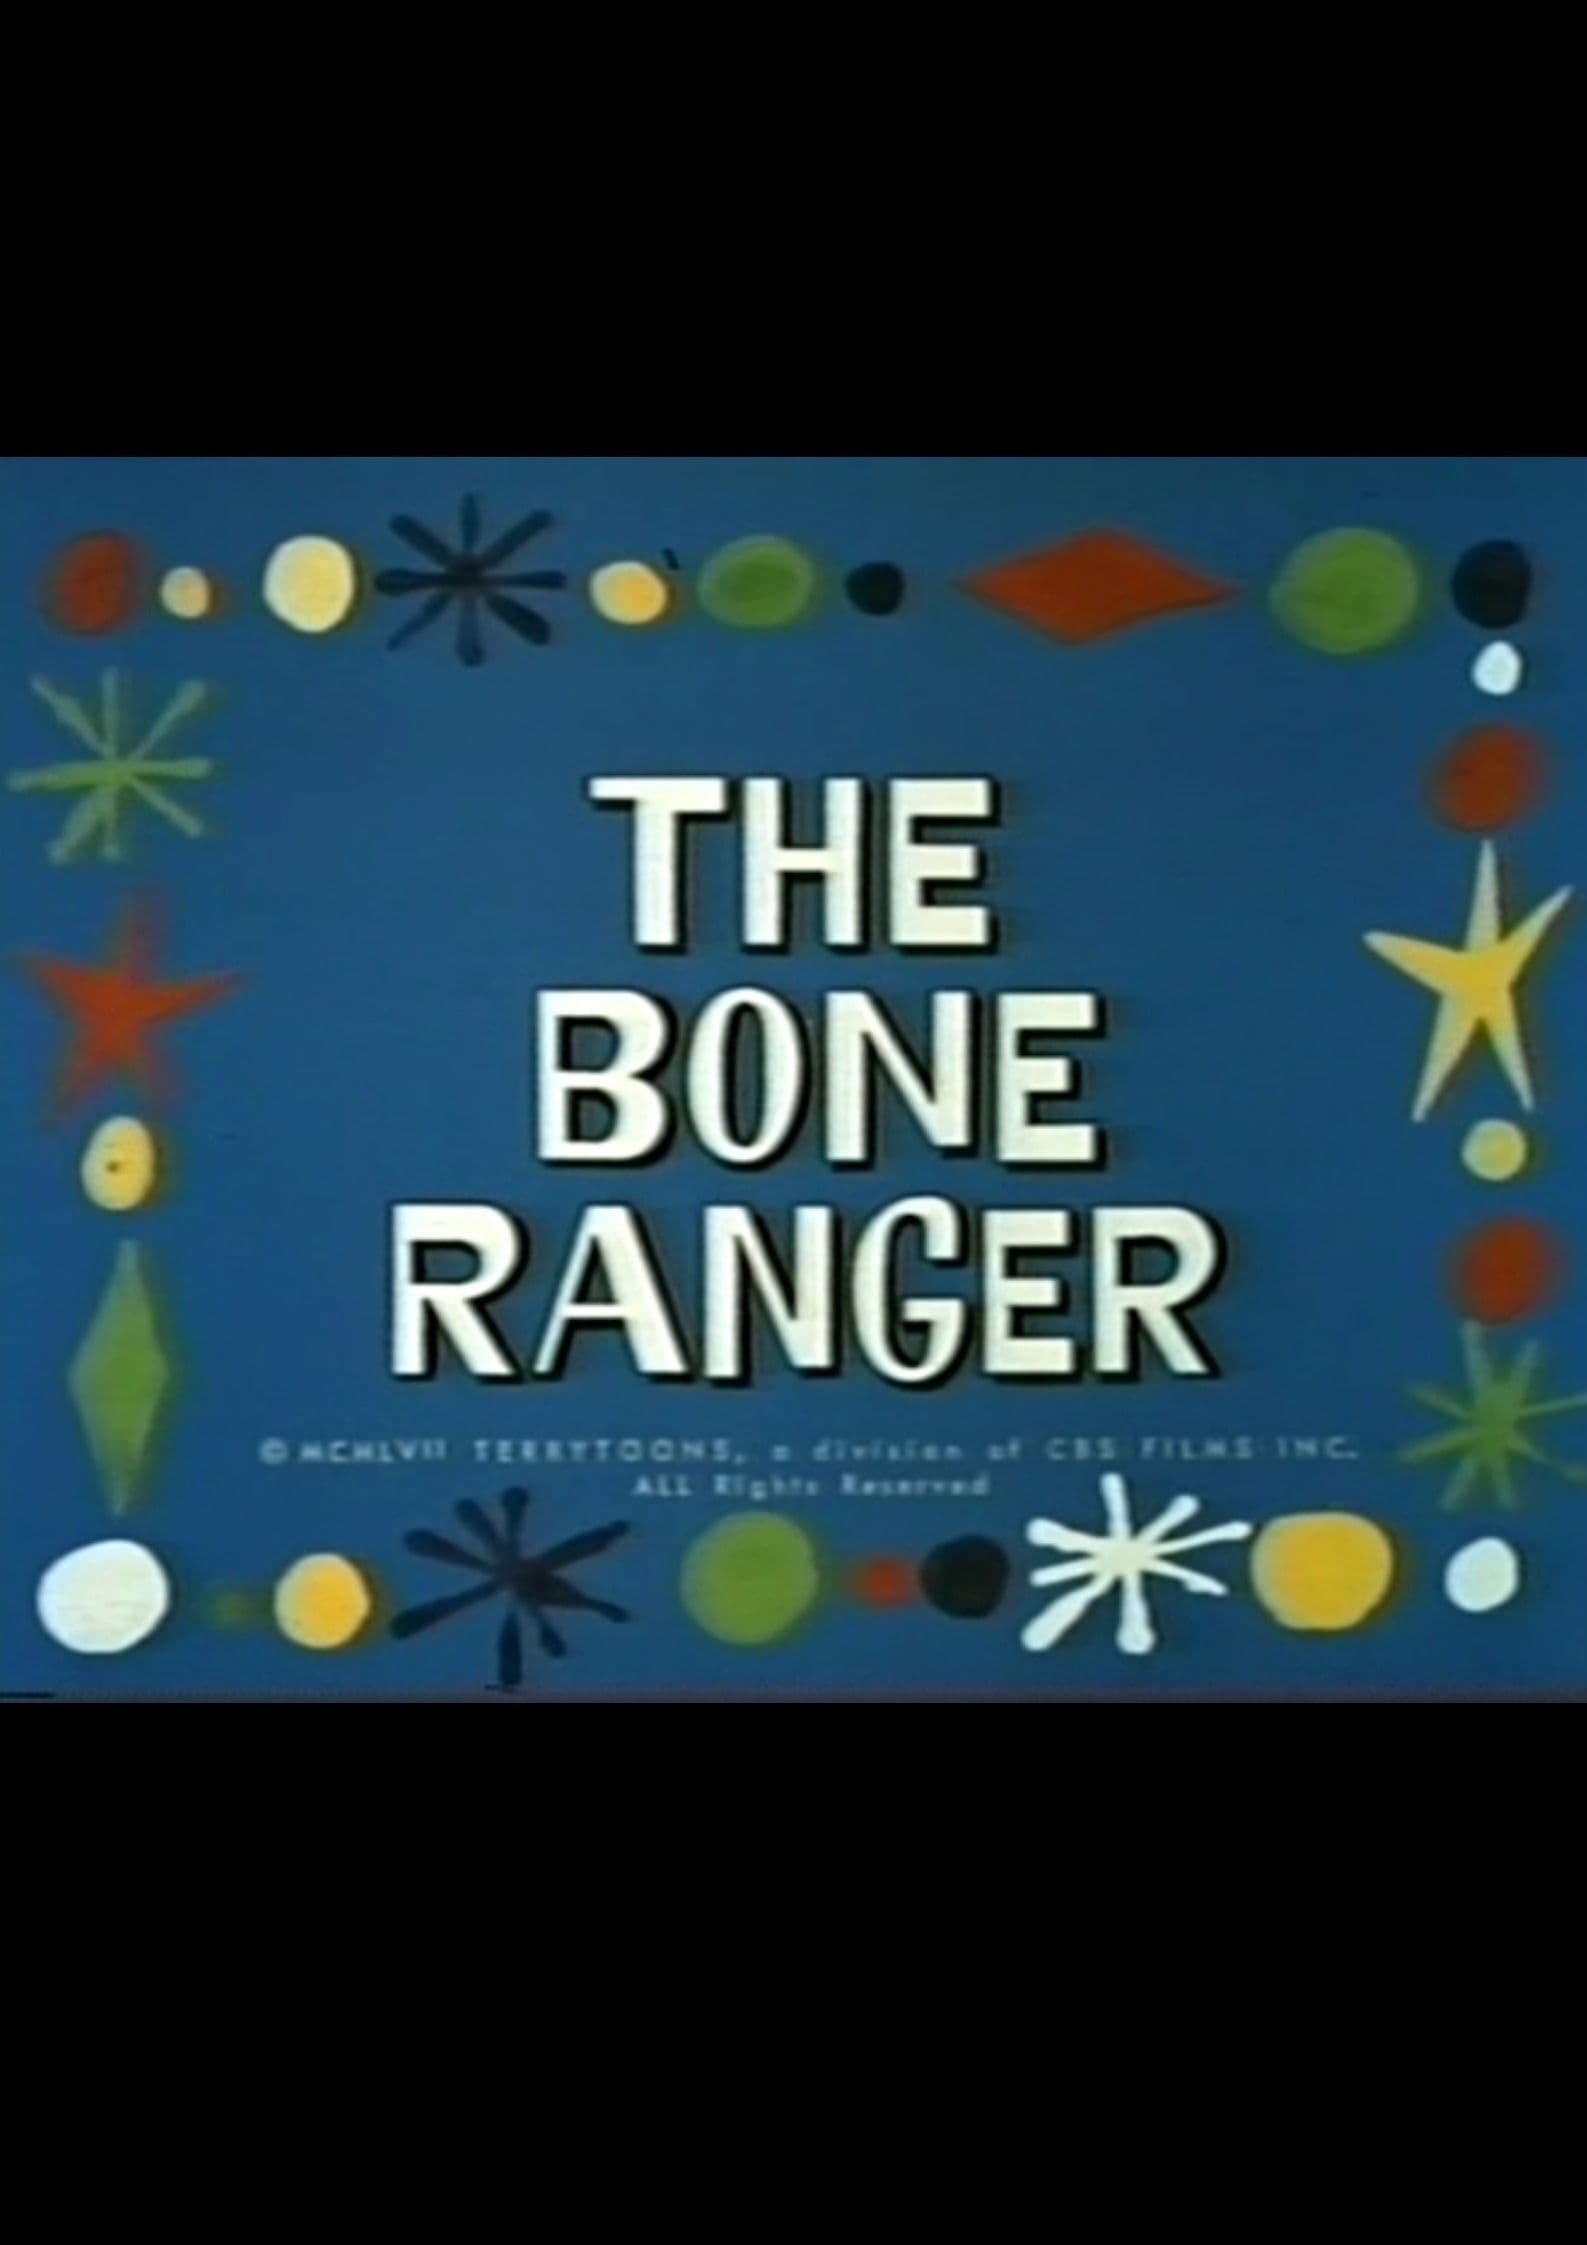 The Bone Ranger